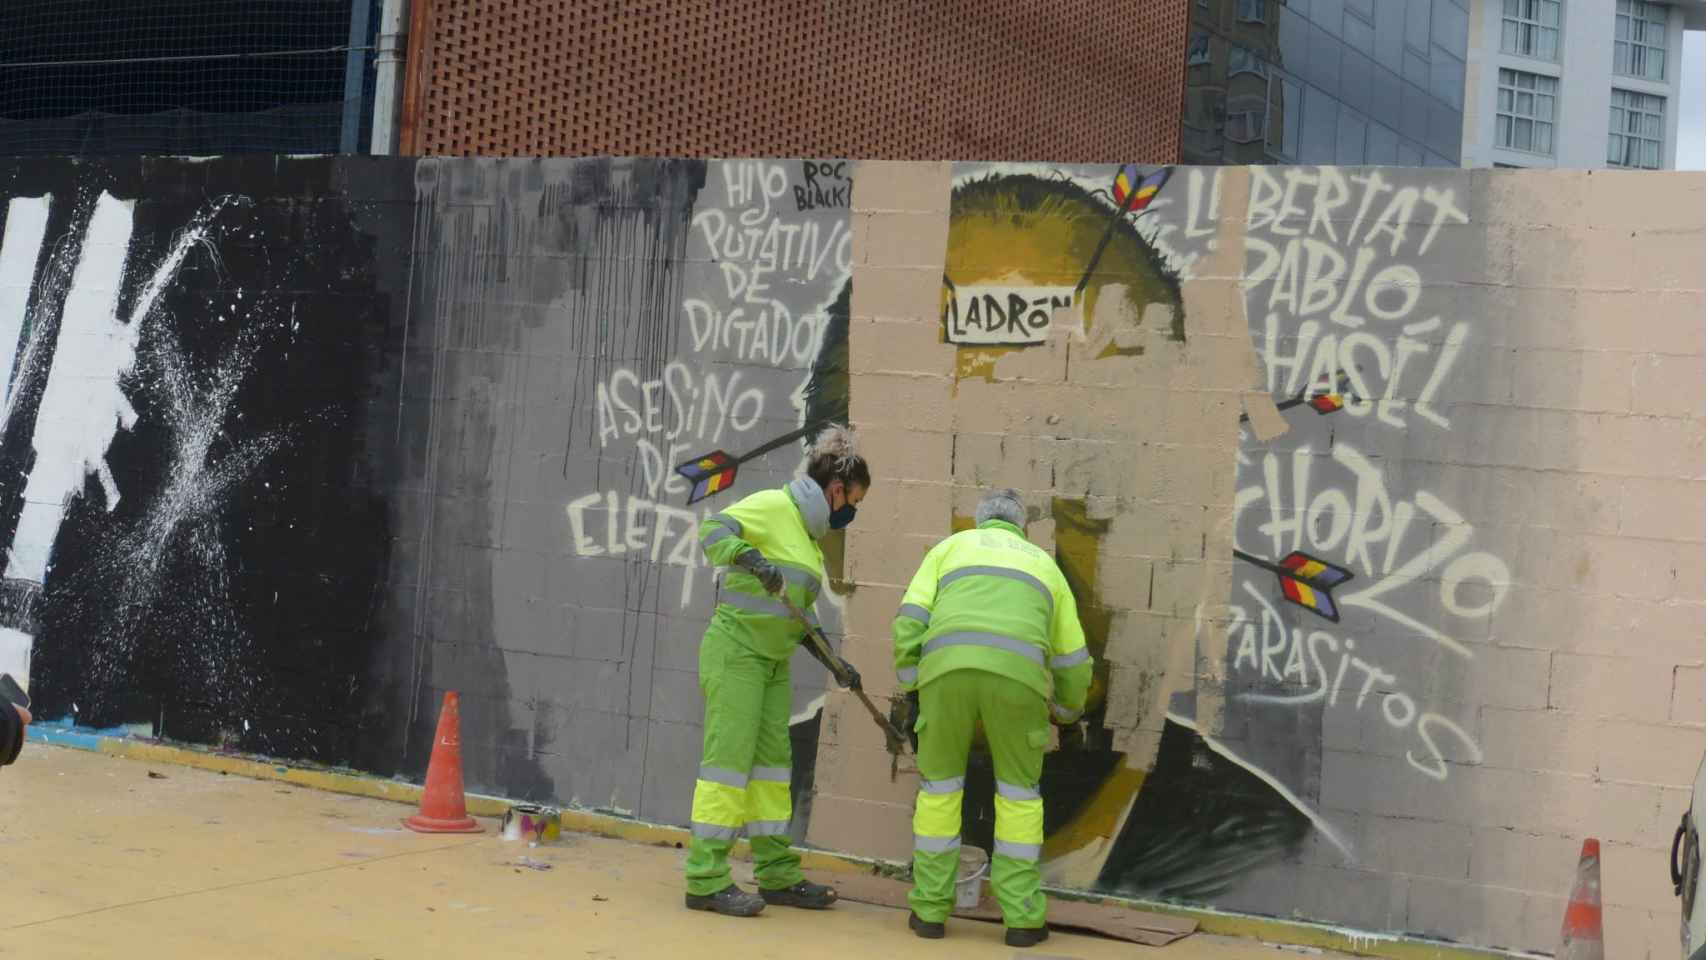 Trabajadores del servicio de limpieza borran el mural antimonárquico defendido por Badia y Serra / @ROCBLACKBLOCK